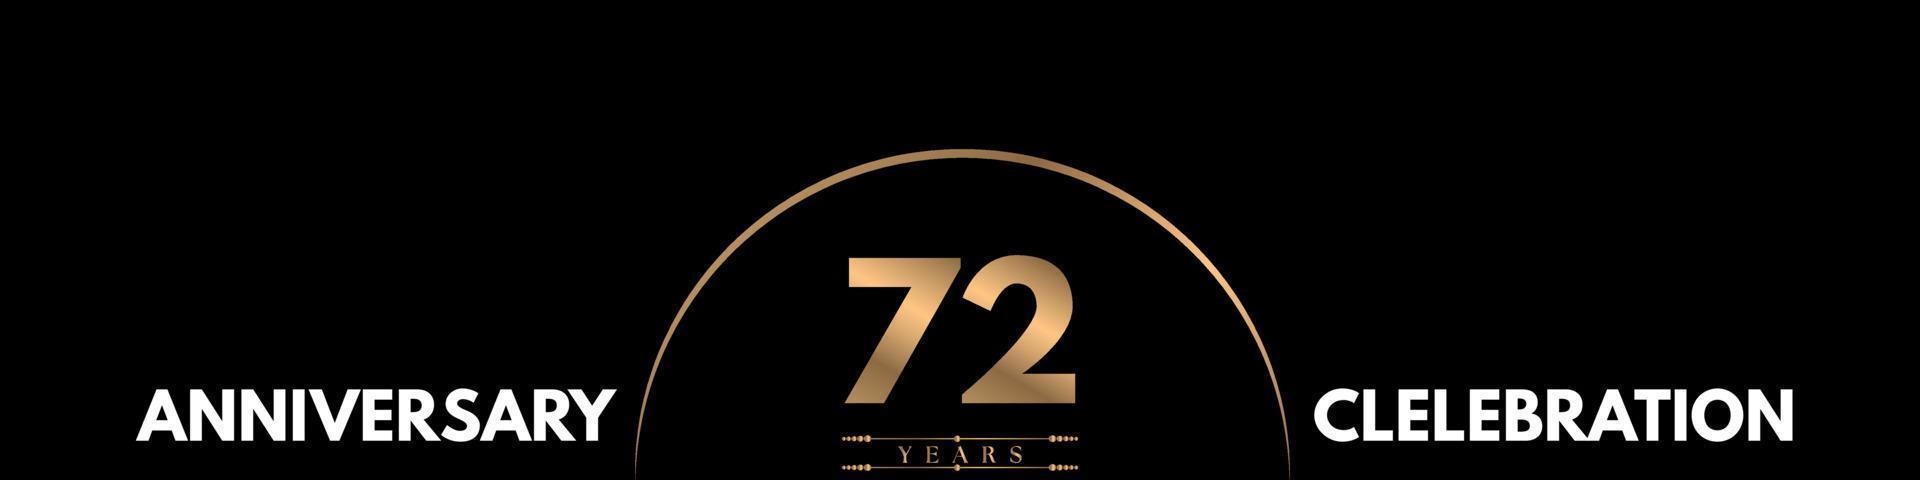 Celebración del aniversario de 72 años con un número elegante aislado en fondo negro. diseño vectorial para tarjeta de felicitación, fiesta de cumpleaños, boda, fiesta, ceremonia, tarjeta de invitación. vector